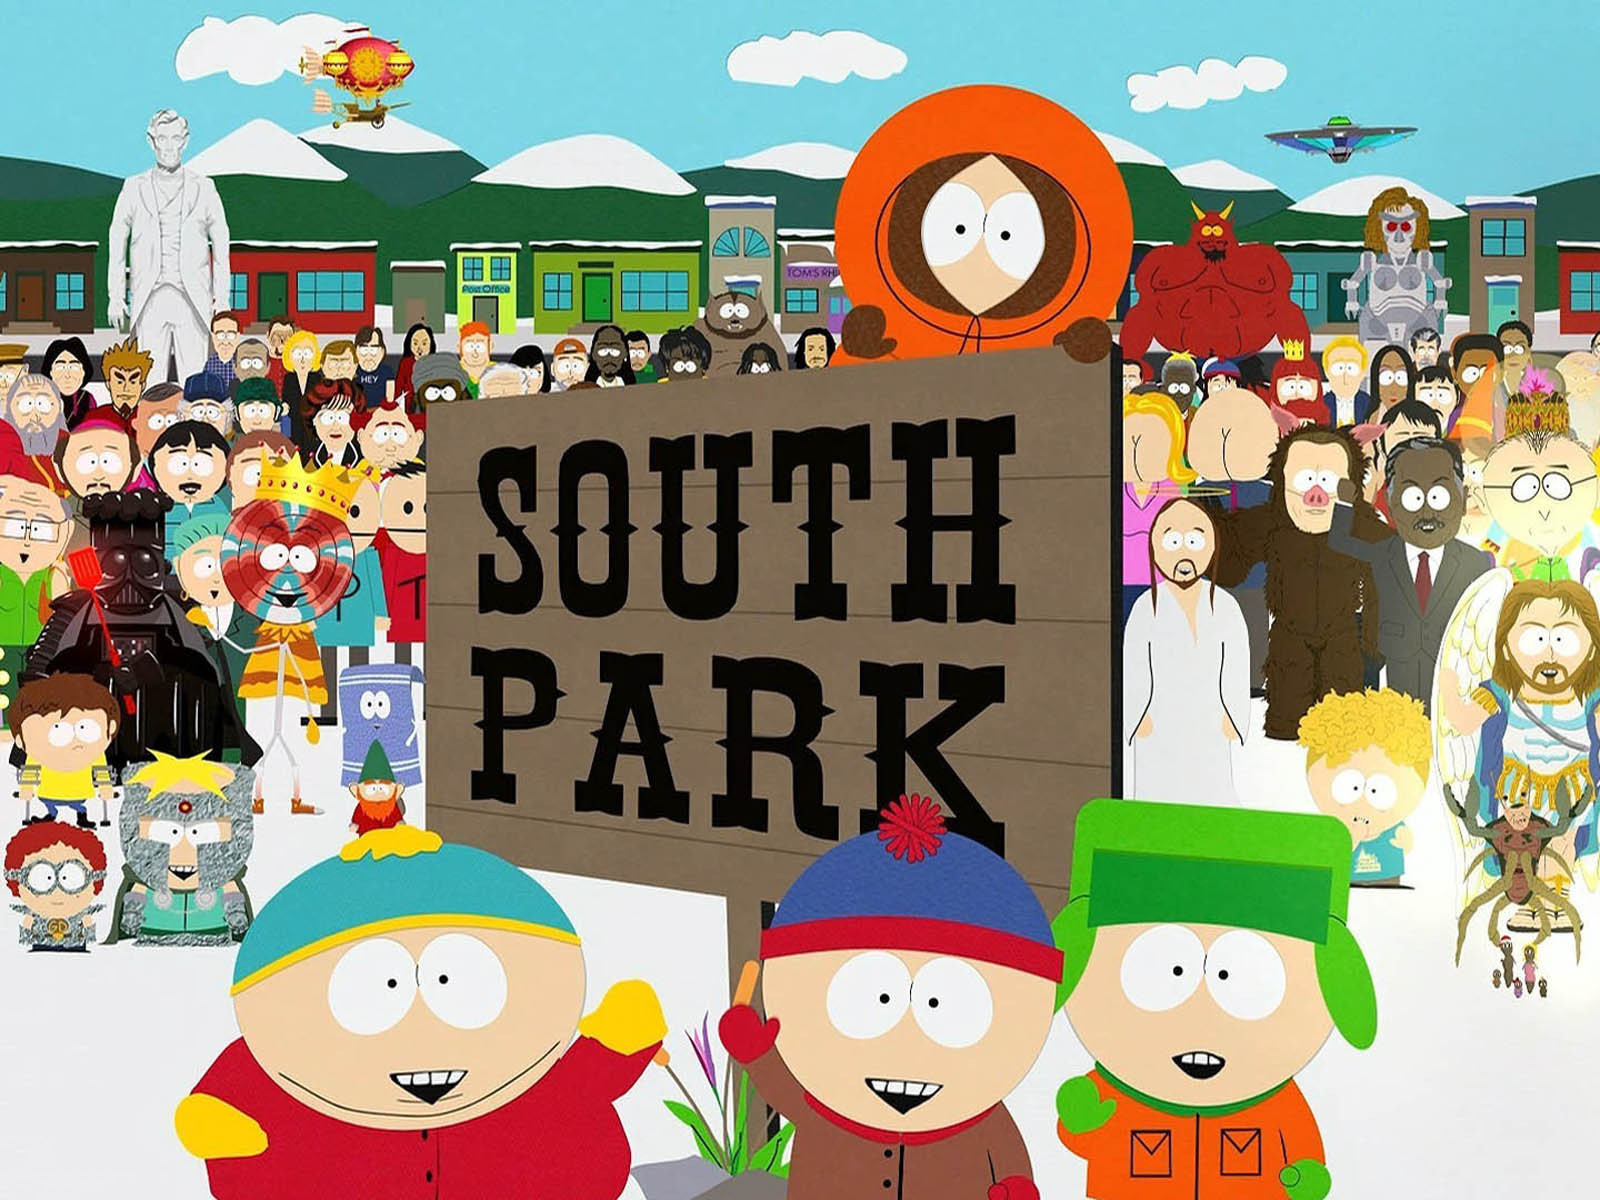 Top Twenty South Park Episodes